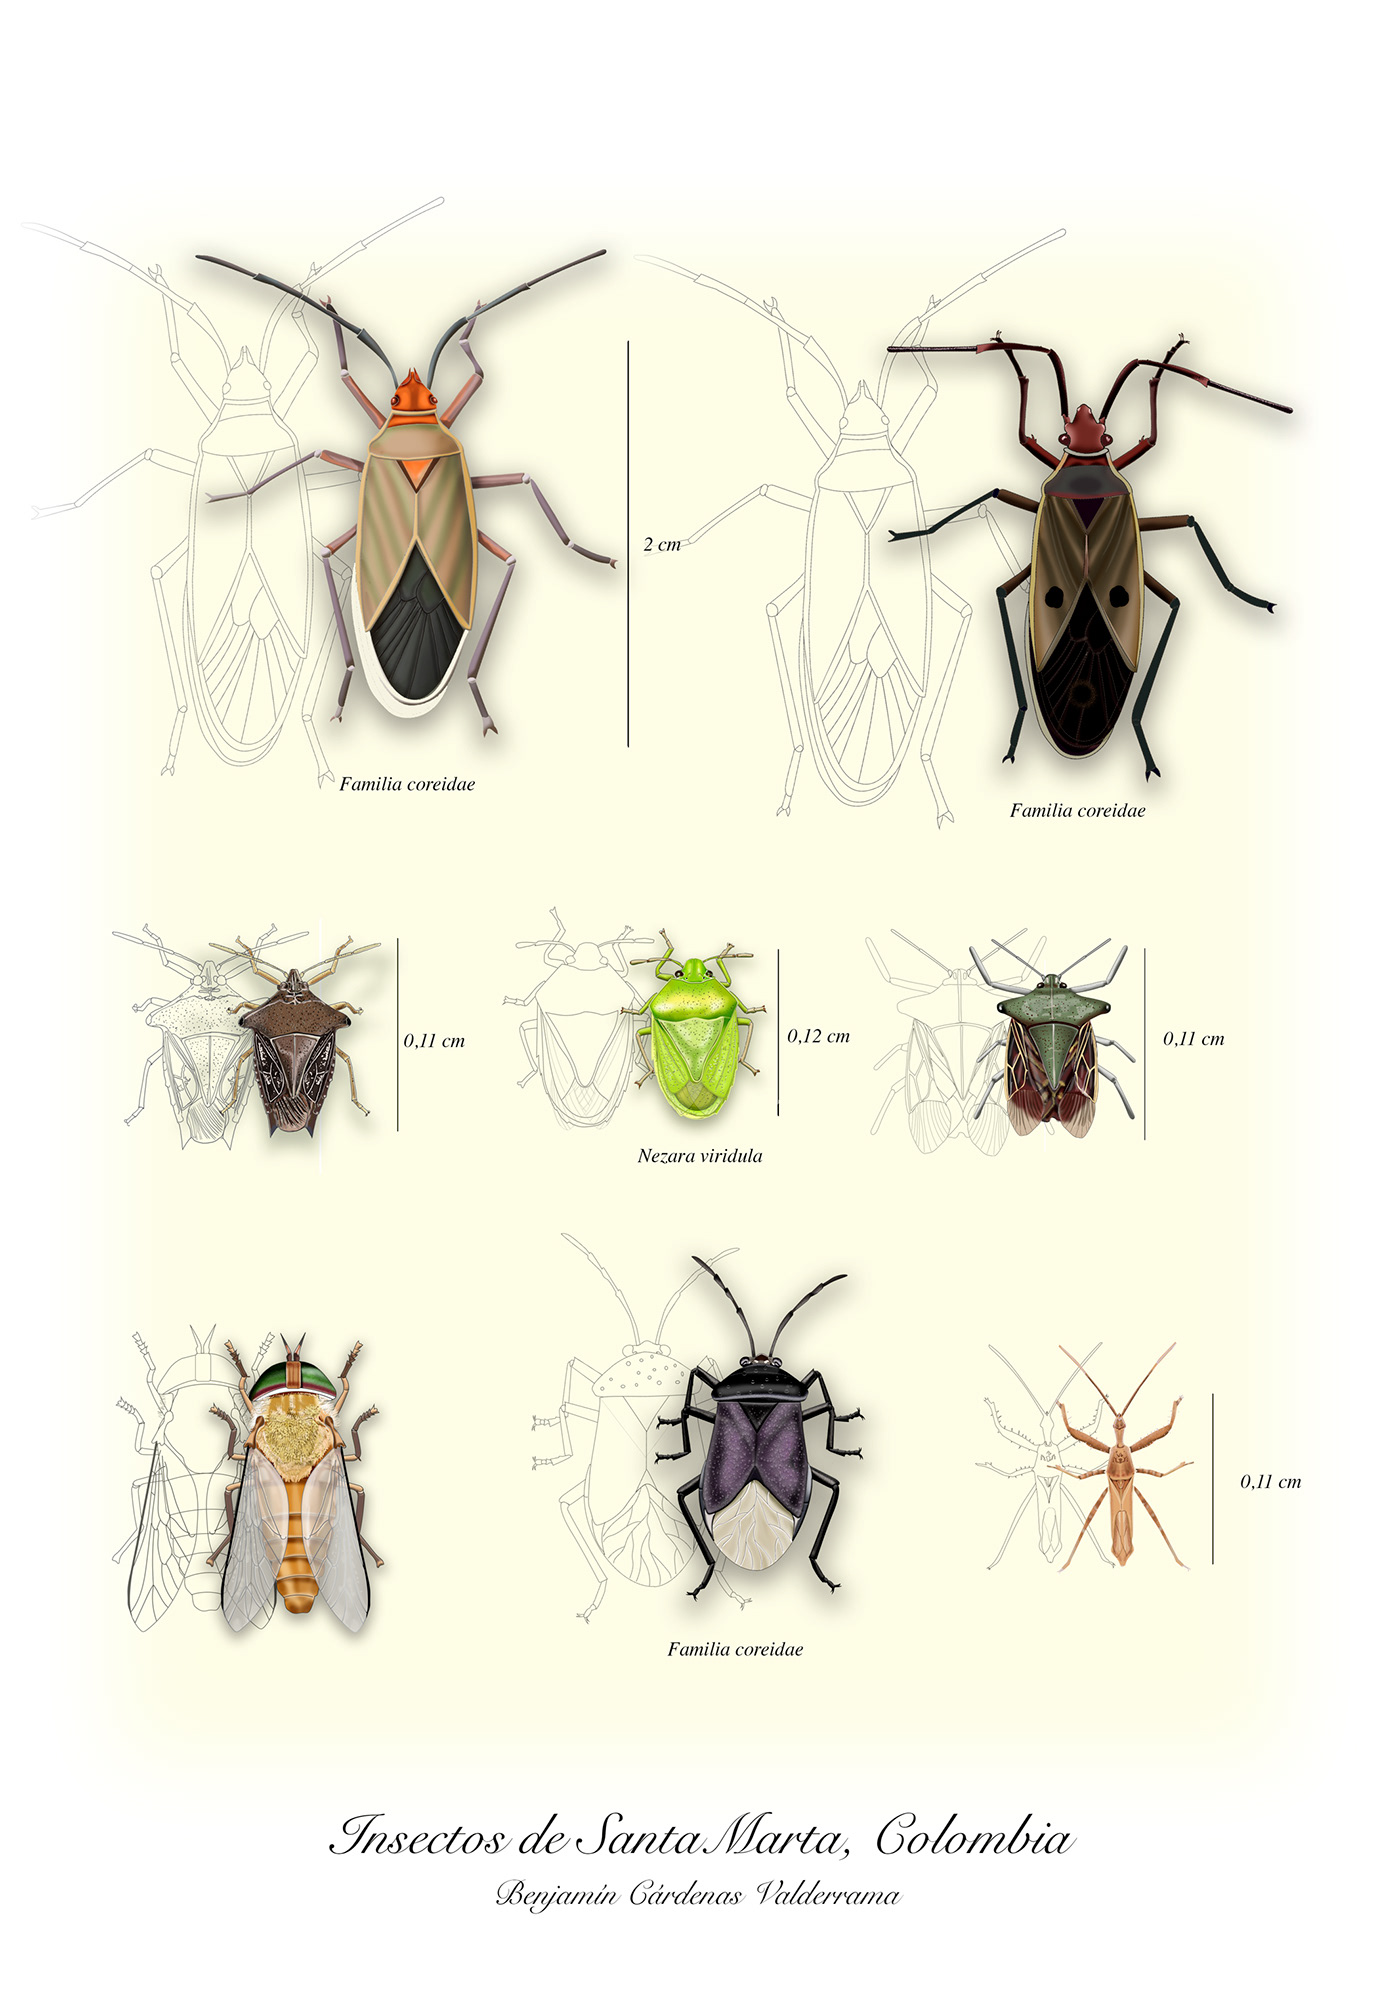 Insectos de Santa Marta